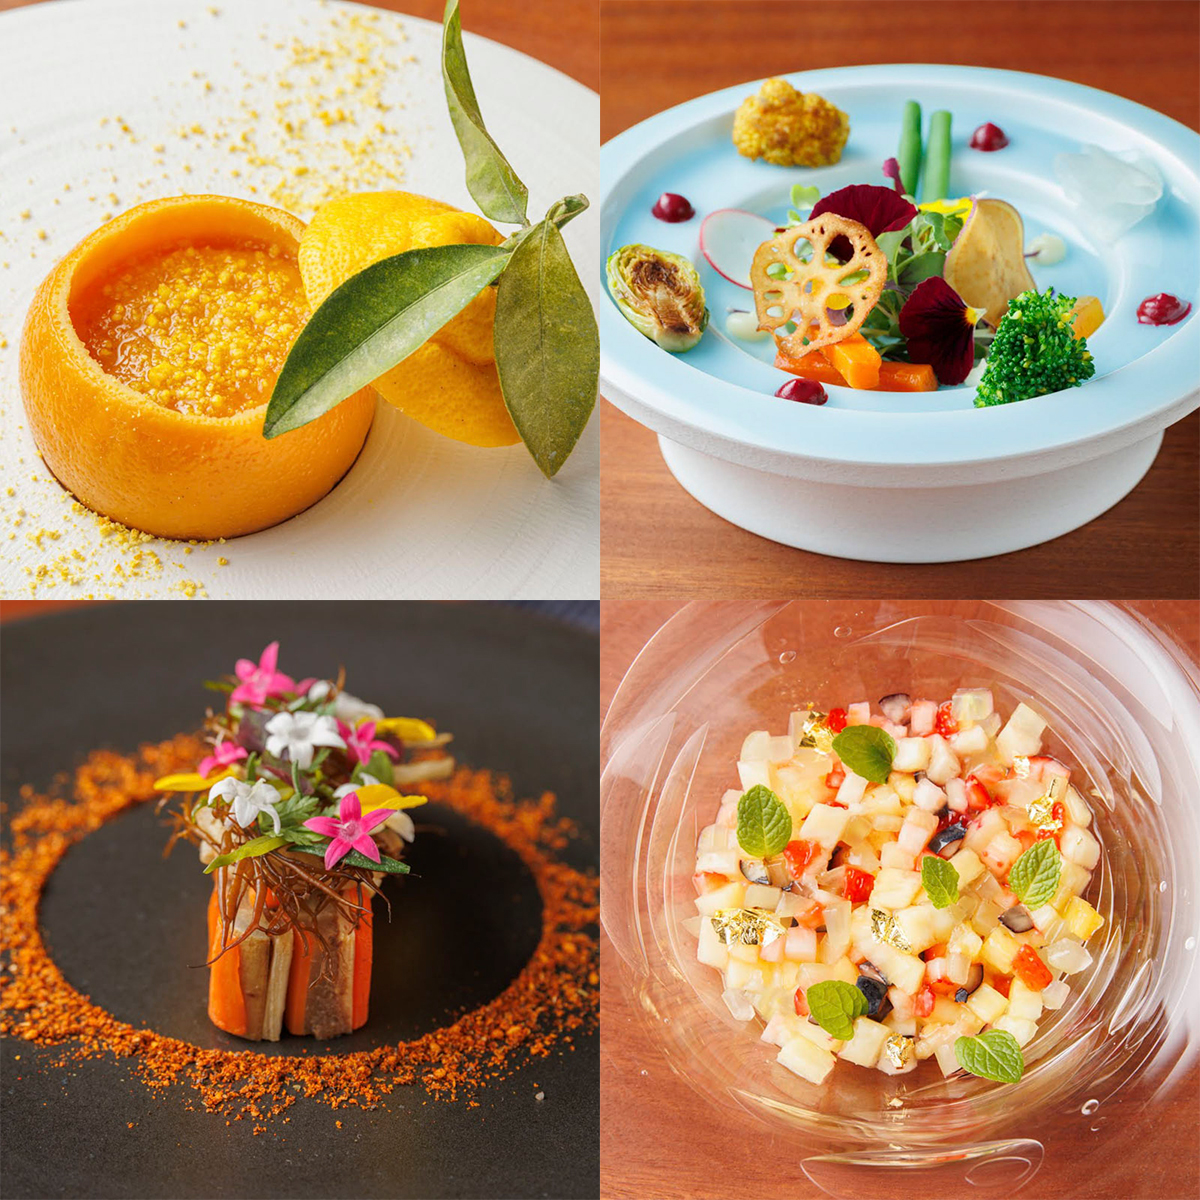 左上「三宝柑の茶わん蒸」、右上「菜園サラダ」、左下「大地の根菜ミルフィーユ」、右下「サラダ ドゥ フリュイ」